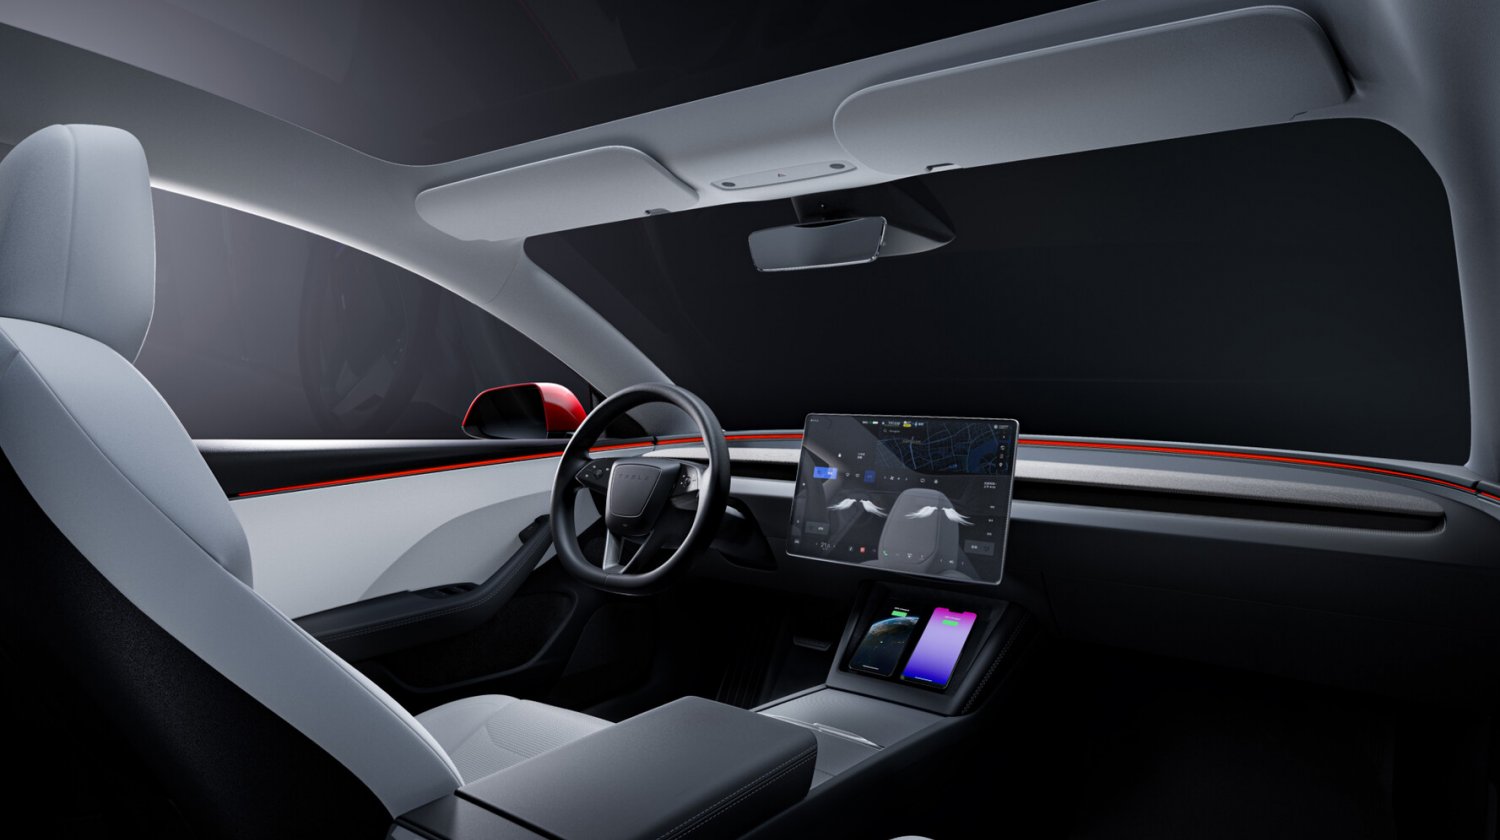 Mehr zum Update für Tesla Model 3: Foto von neuer Mittelkonsole